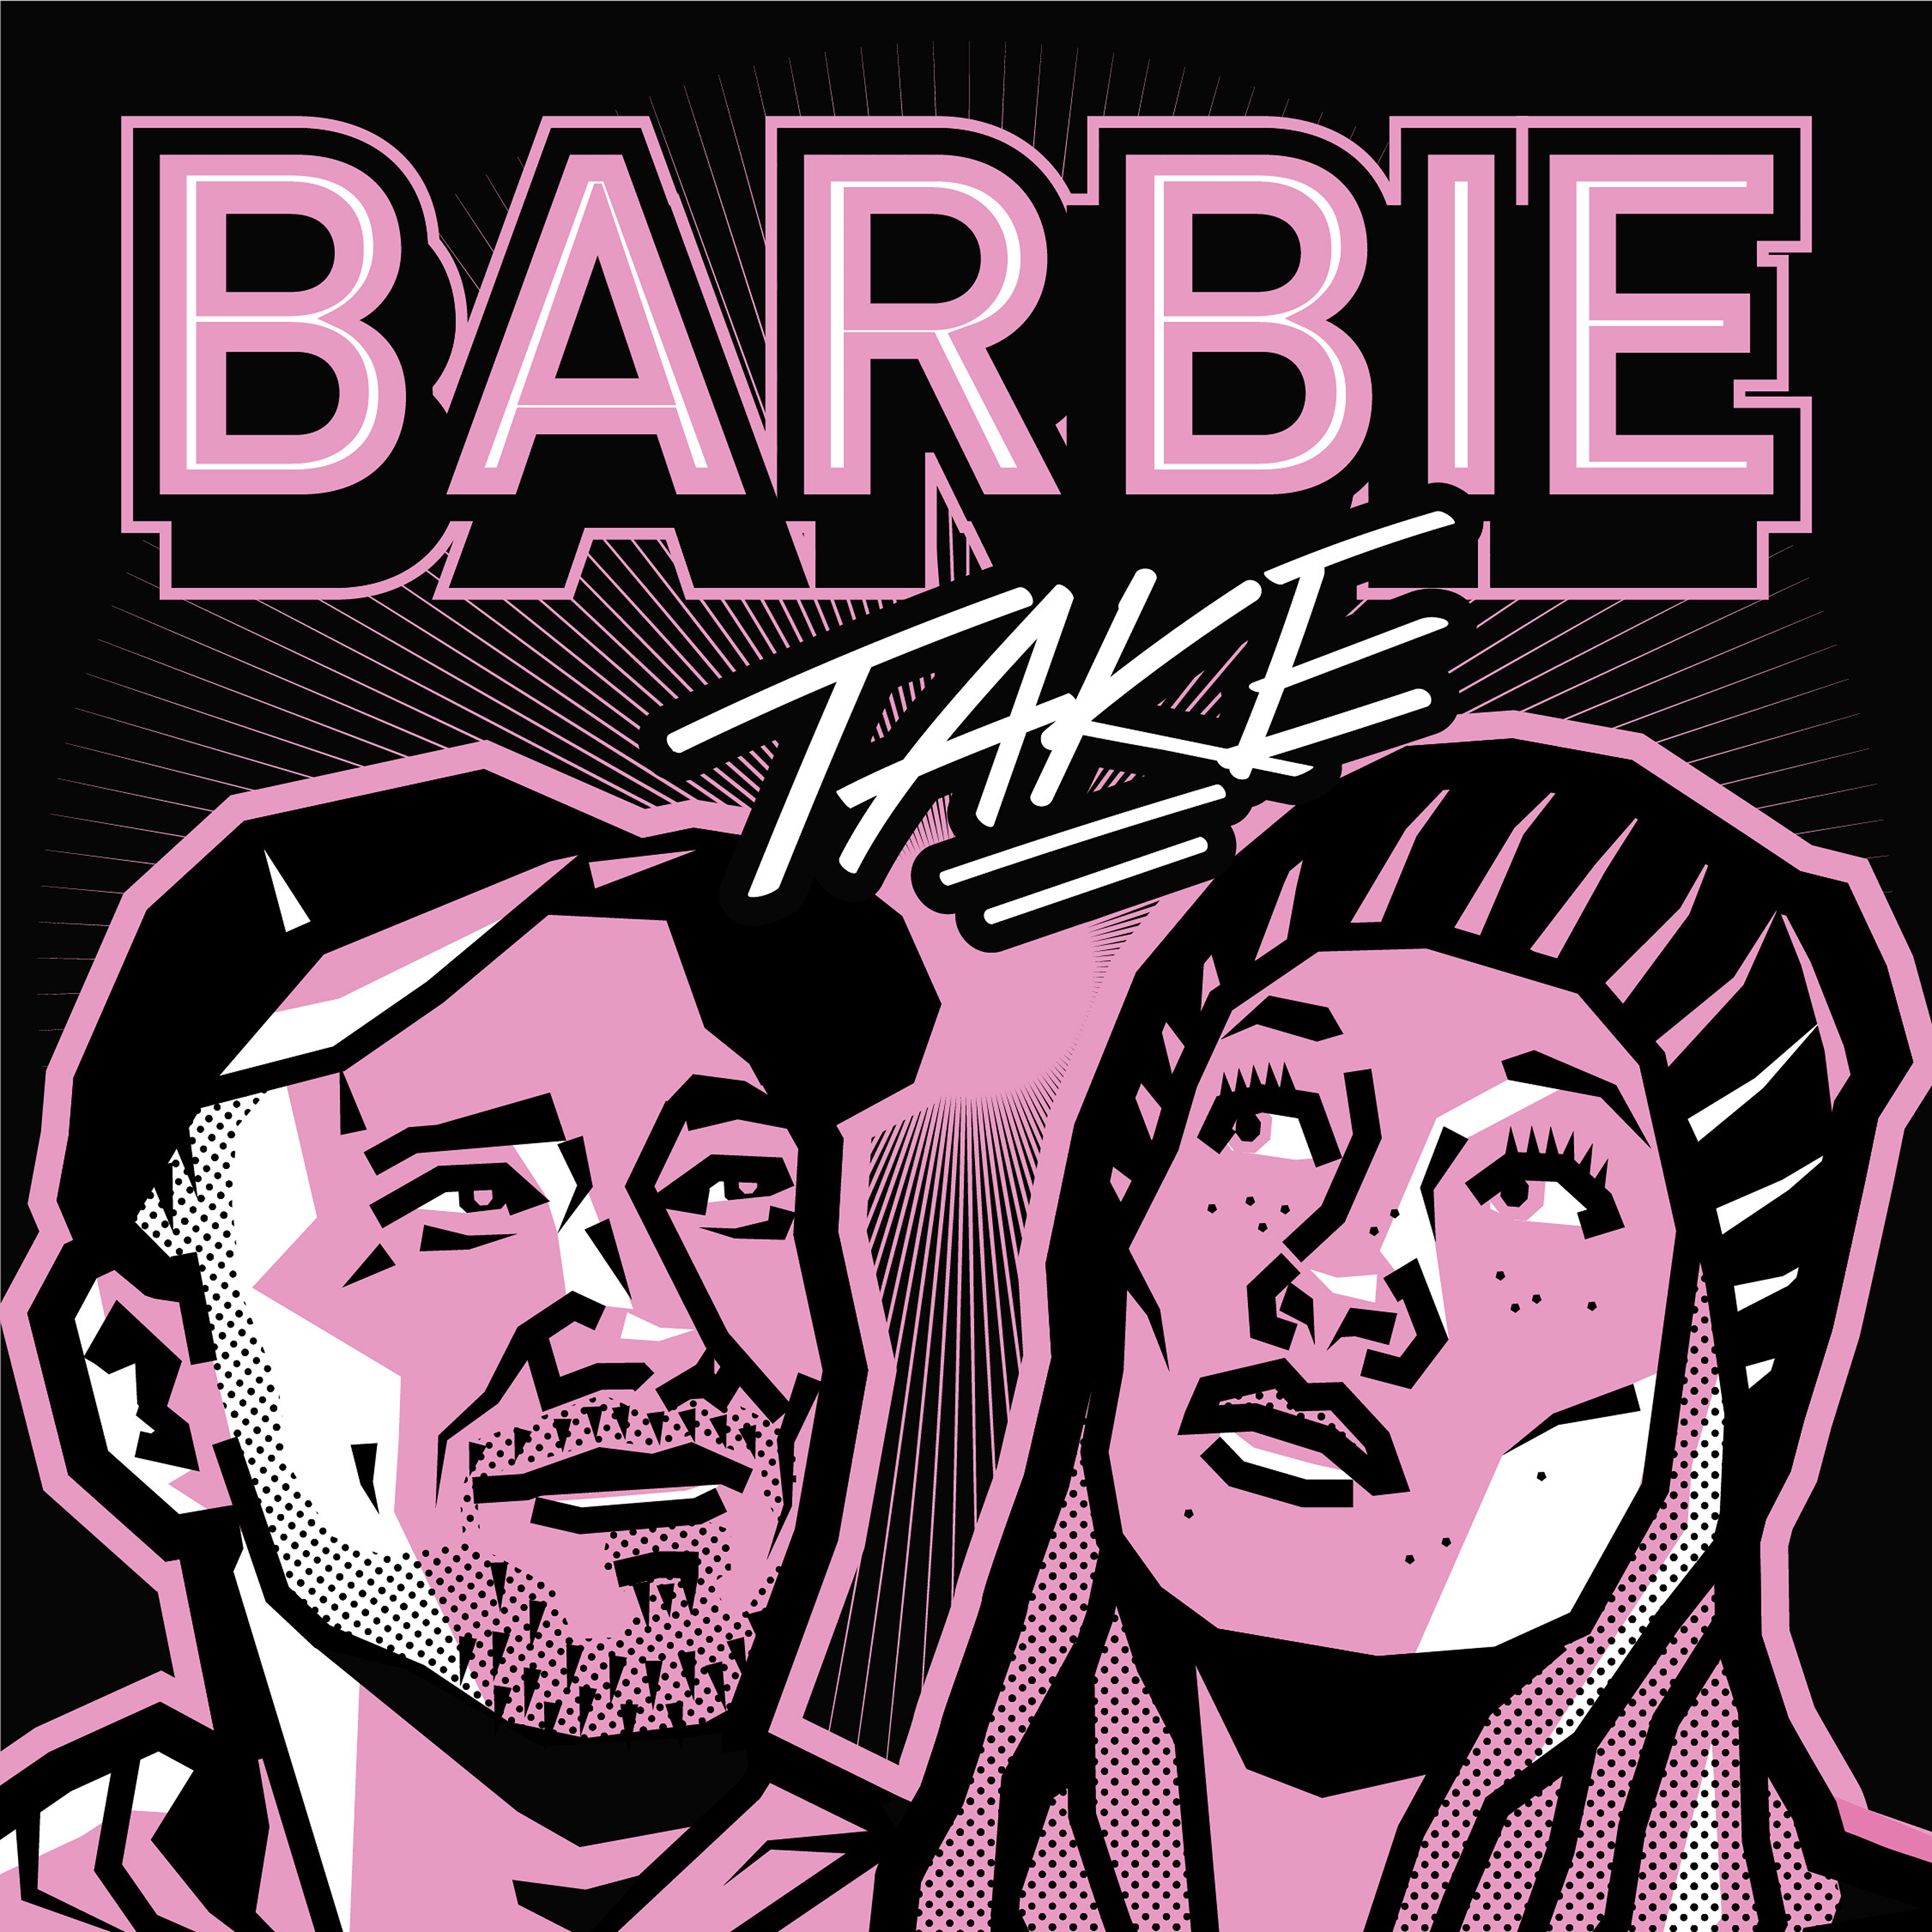  15 Come on Barbie let's go Viral – Wie der Film von organischem Content profitiert